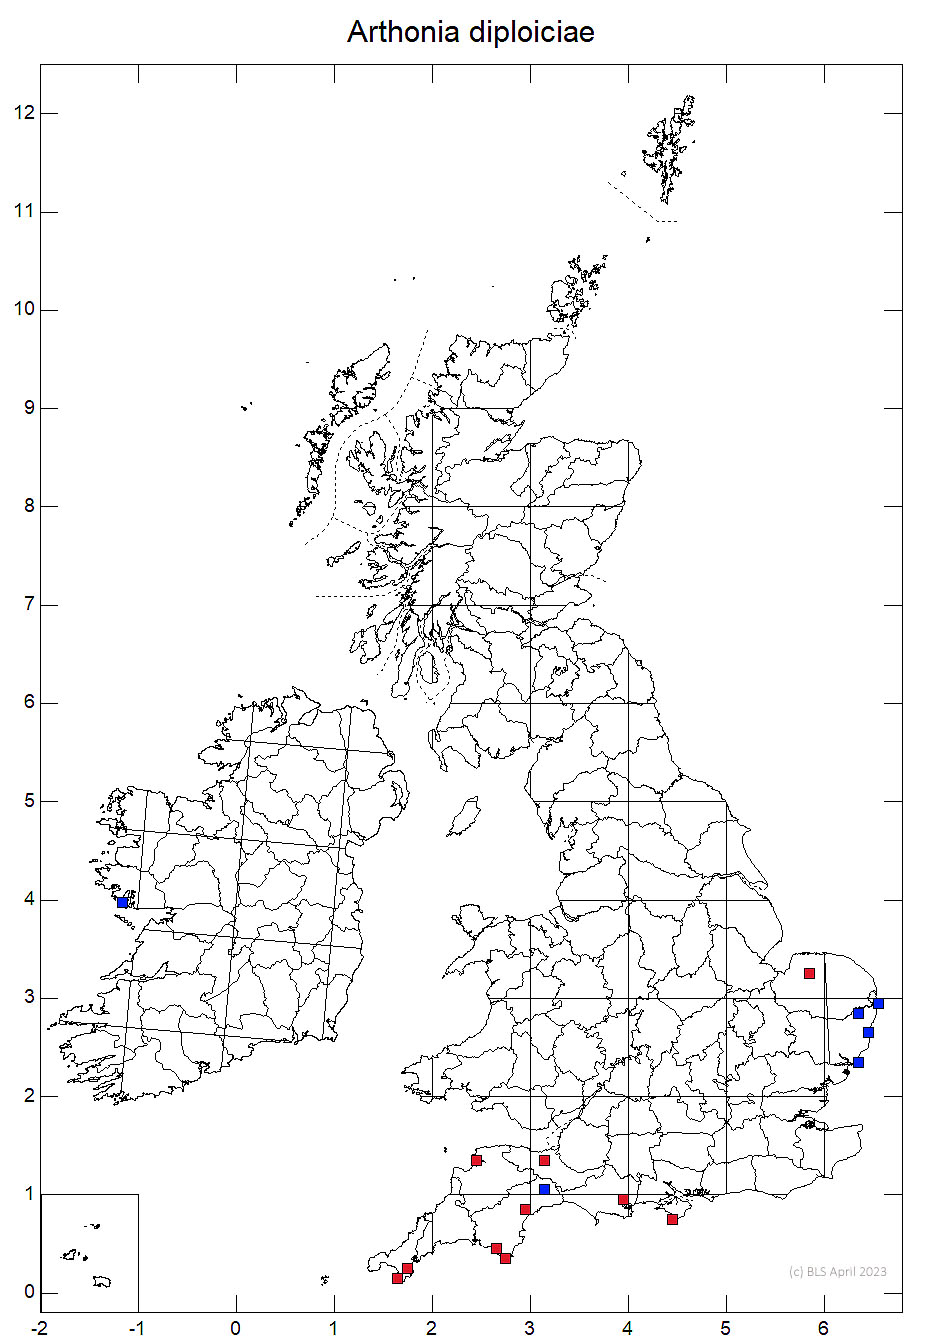 Arthonia diploiciae 10km sq distribution map